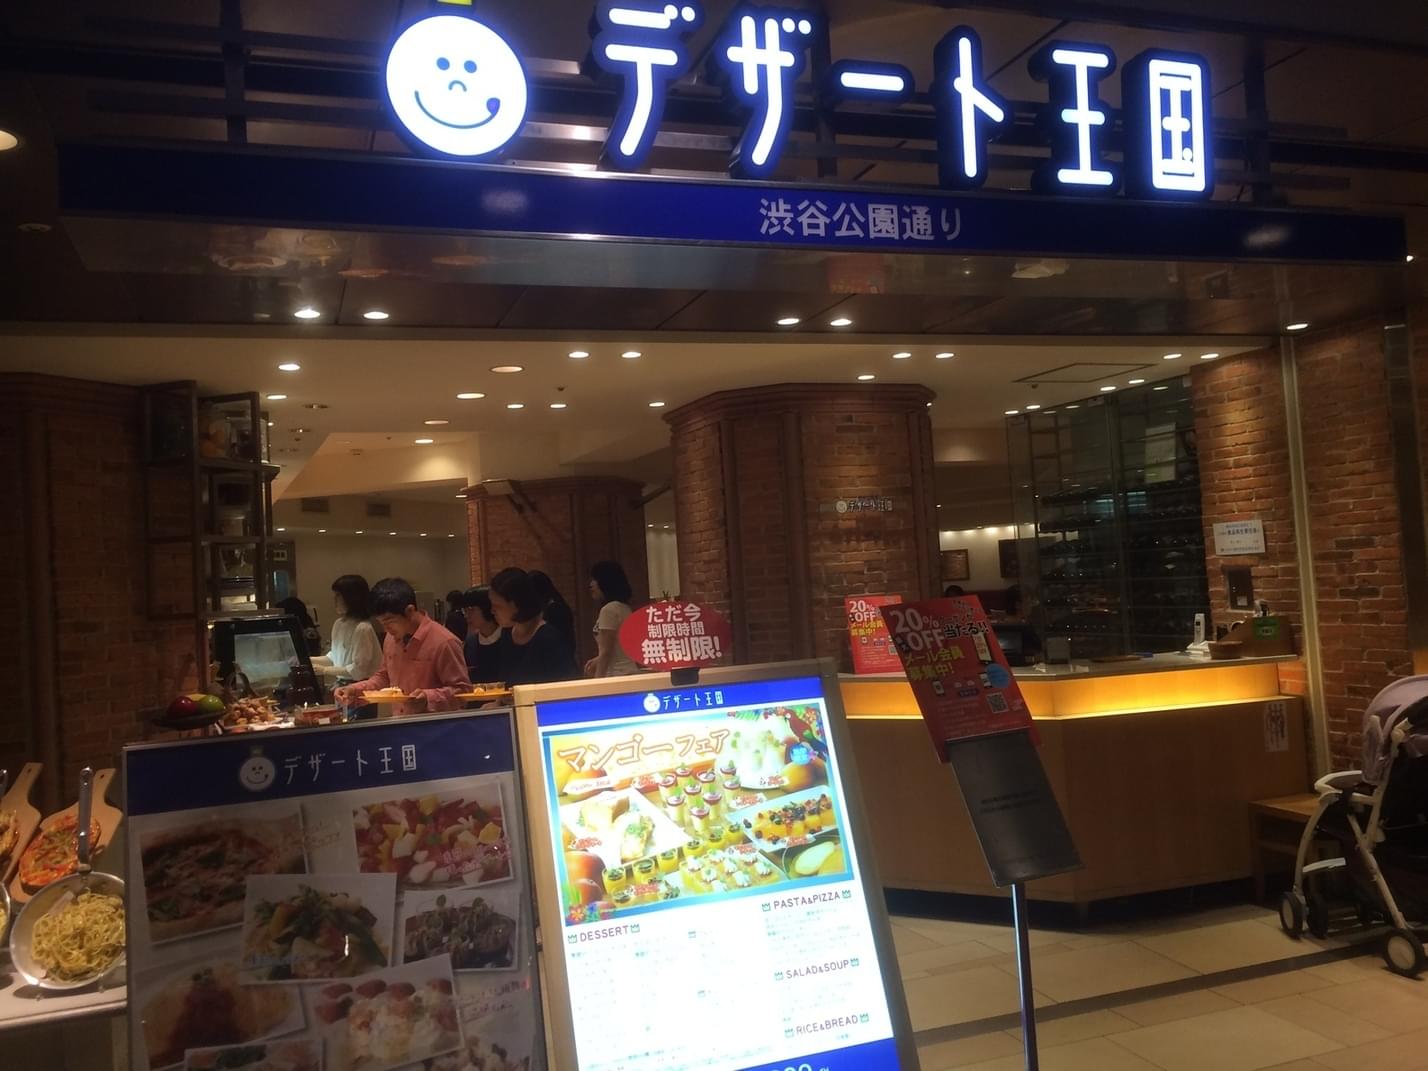 横浜駅周辺には魅力的なビュッフェレストランがいっぱい